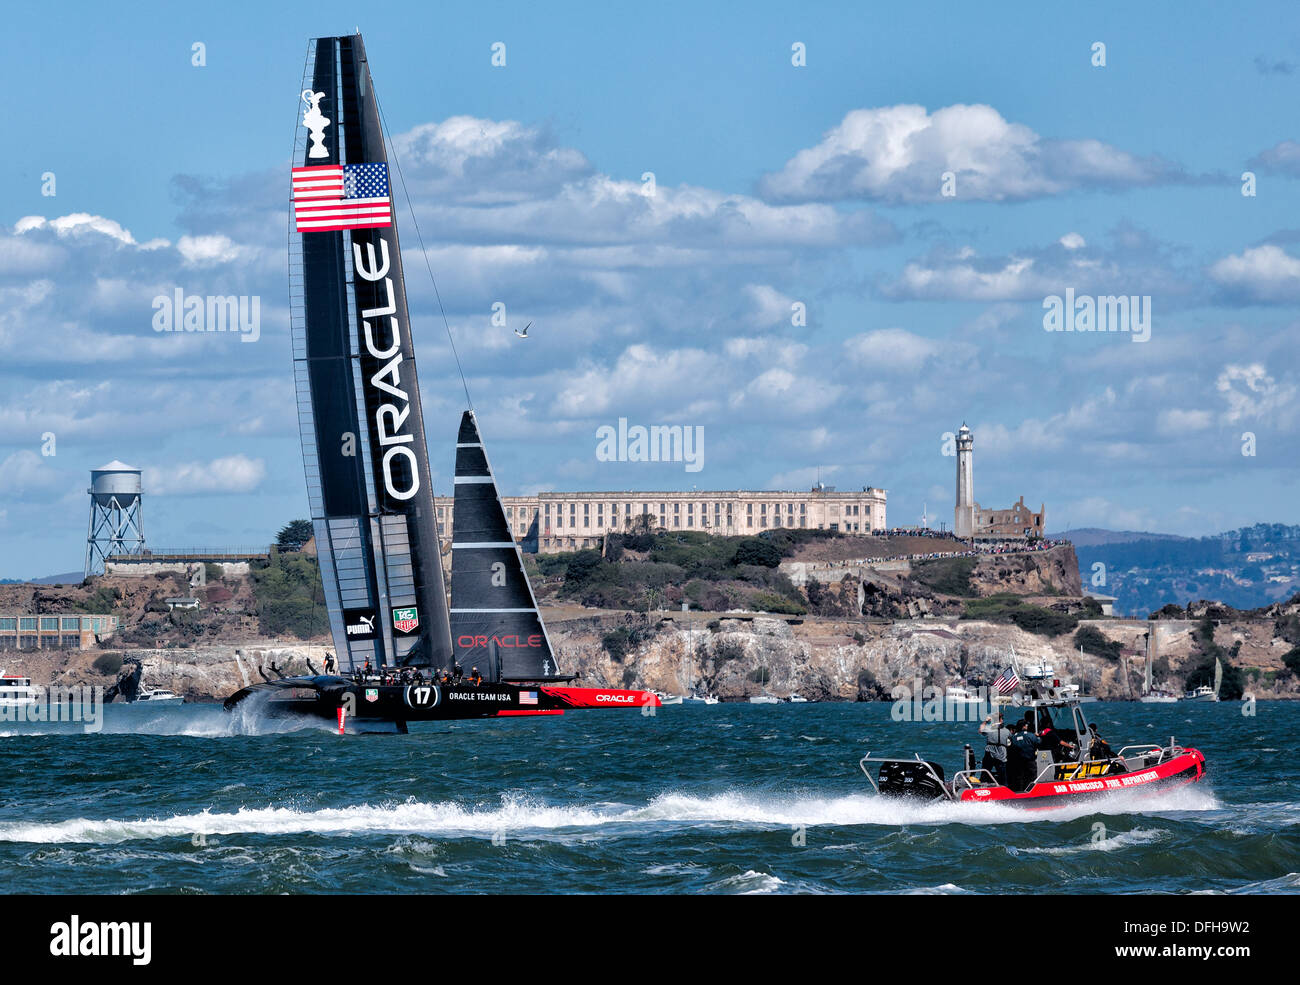 SAN FRANCISCO-Le 25 septembre 2013 : Oracle Team USA l'Île Alcatraz approches au cours de la dernière course de l'America's Cup avec la Nouvelle-Zélande Banque D'Images